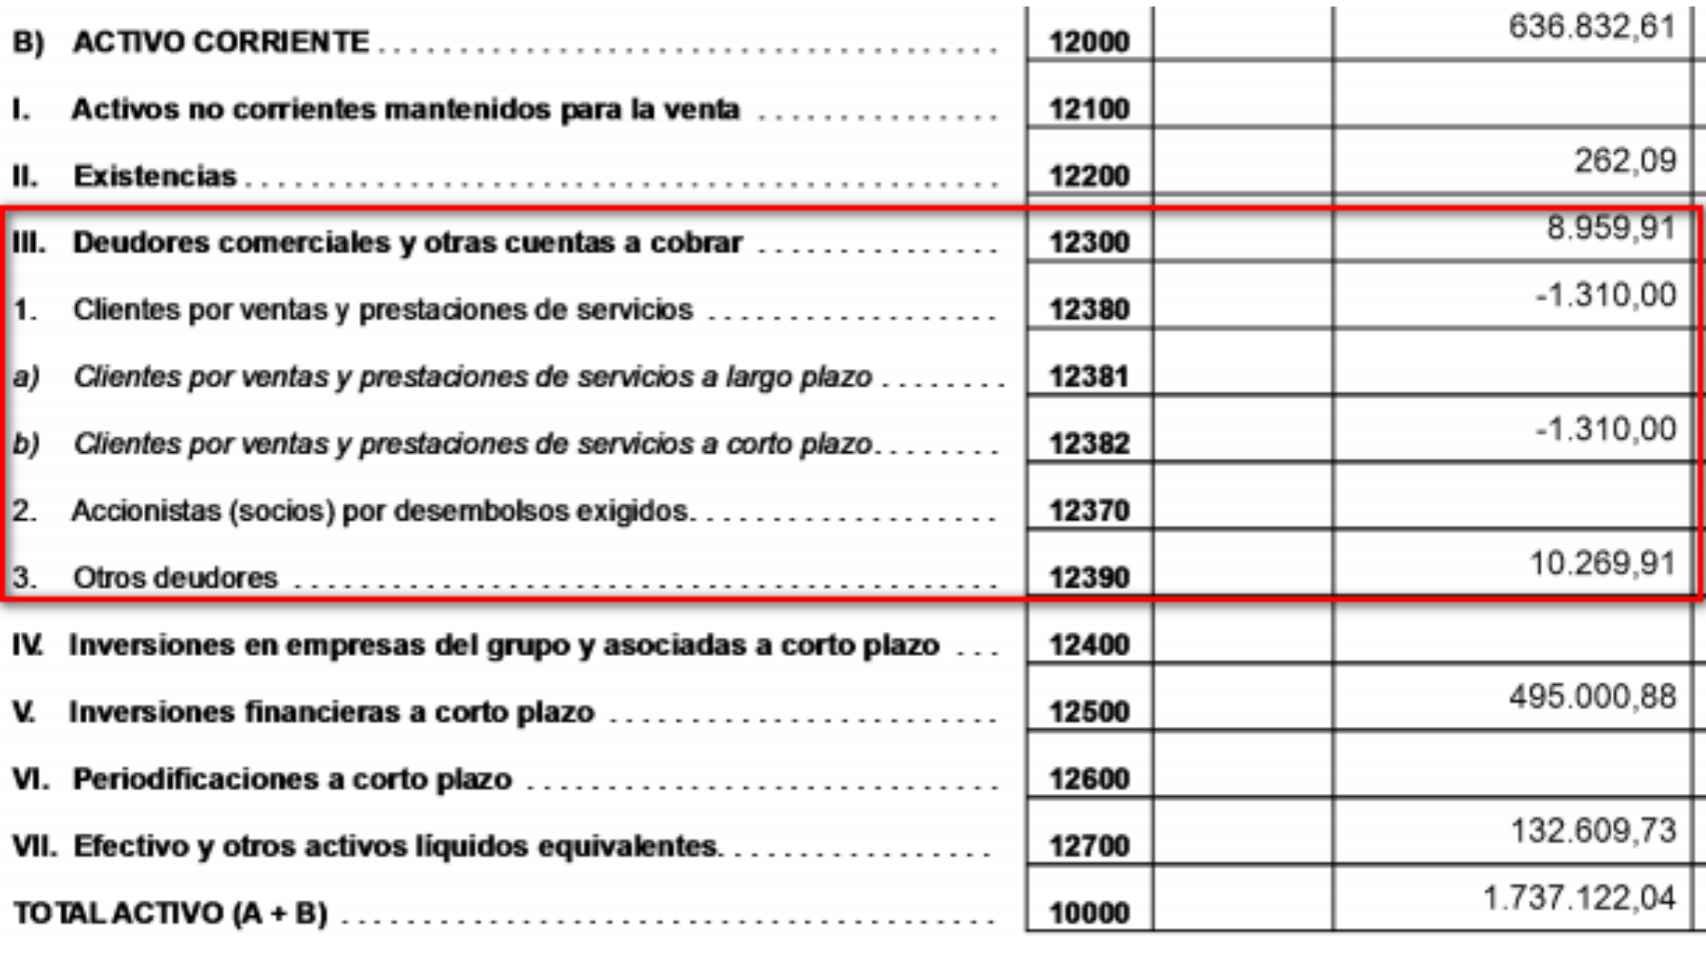 Extracto de las cuentas bancarias presentadas por la sociedad de Francesc Parellada.